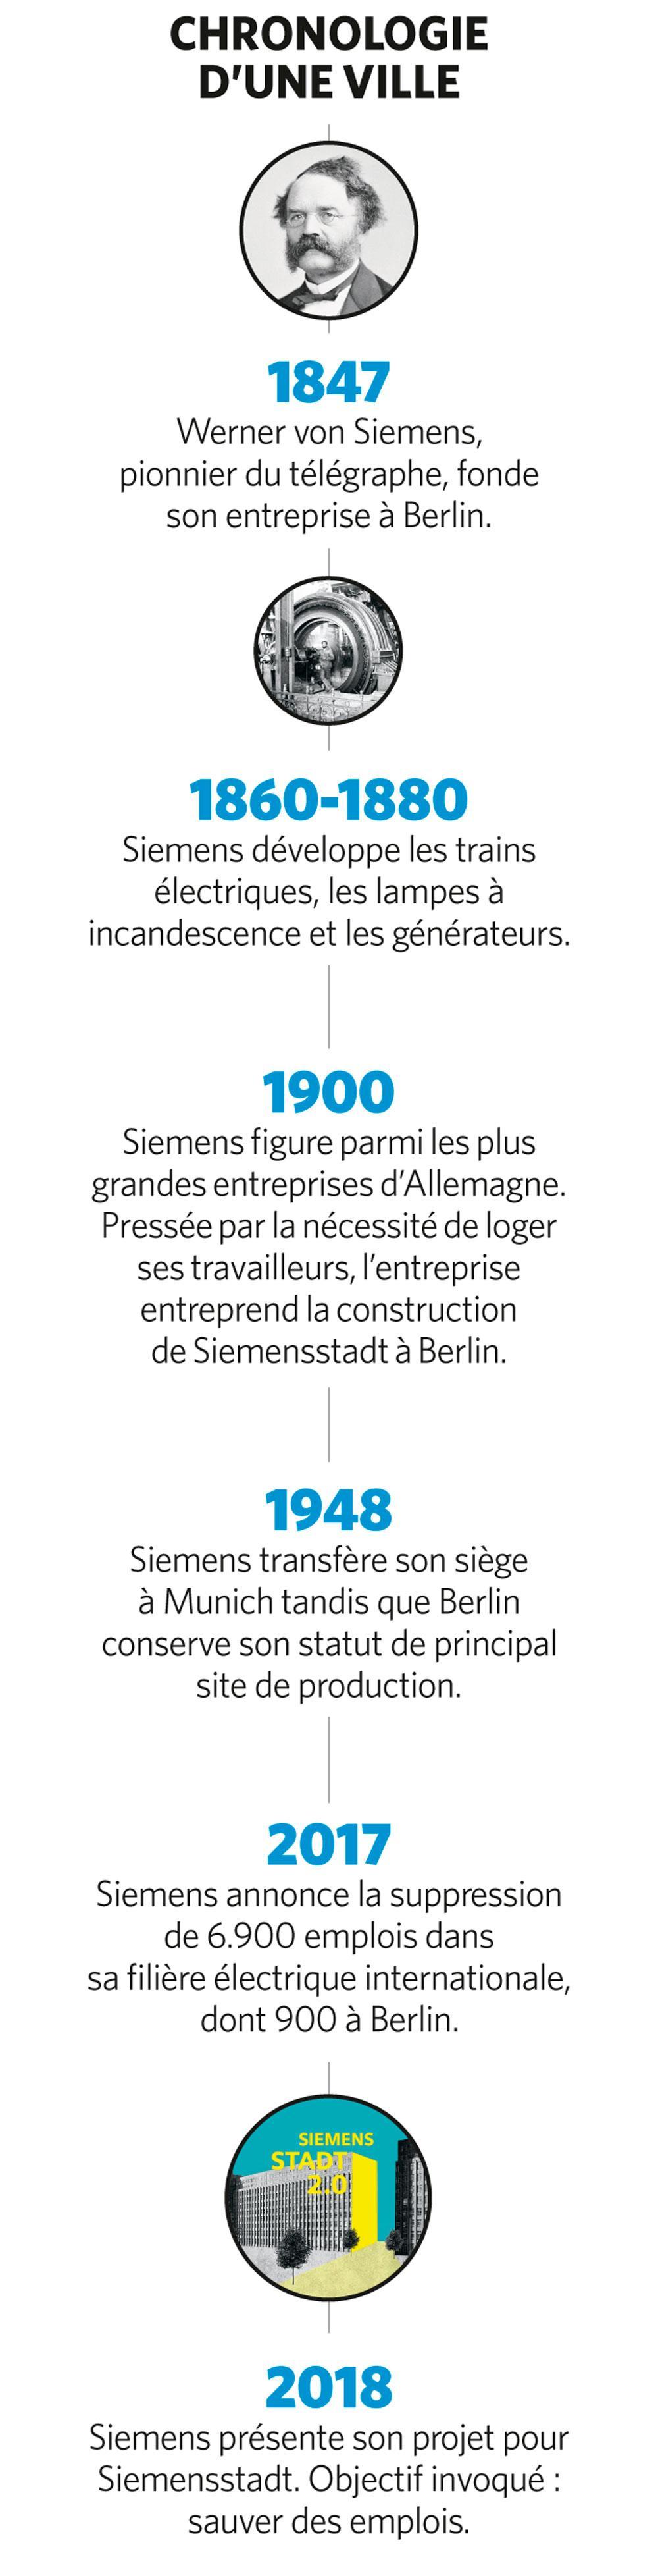 L'investissement record du conglomérat Siemens sur sa terre natale de Siemensstadt